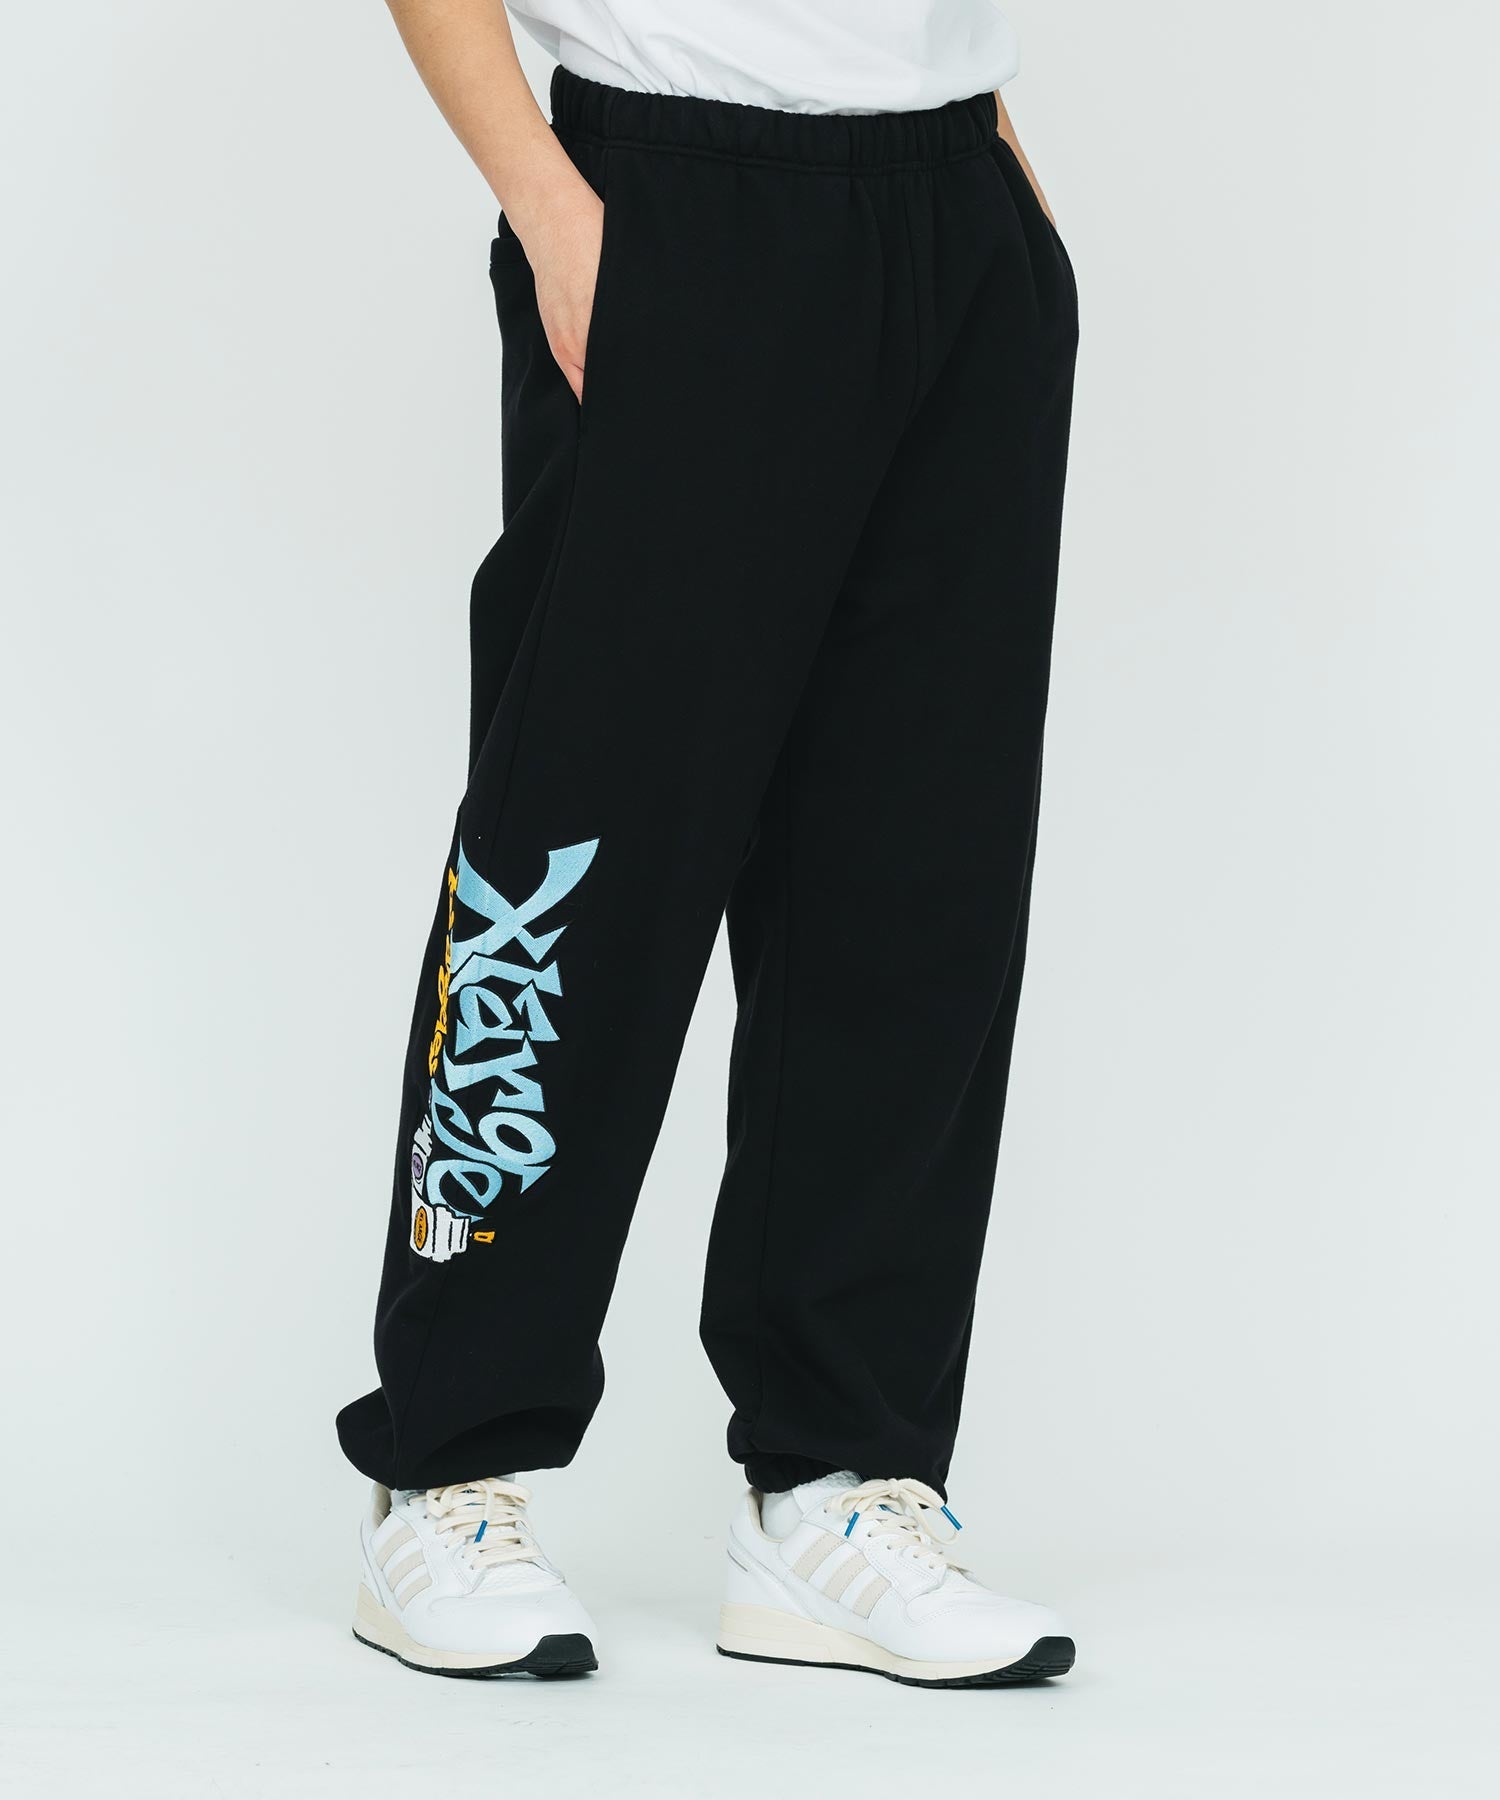 กางเกง XLARGE รุ่น XL Graffiti Sweat Pants